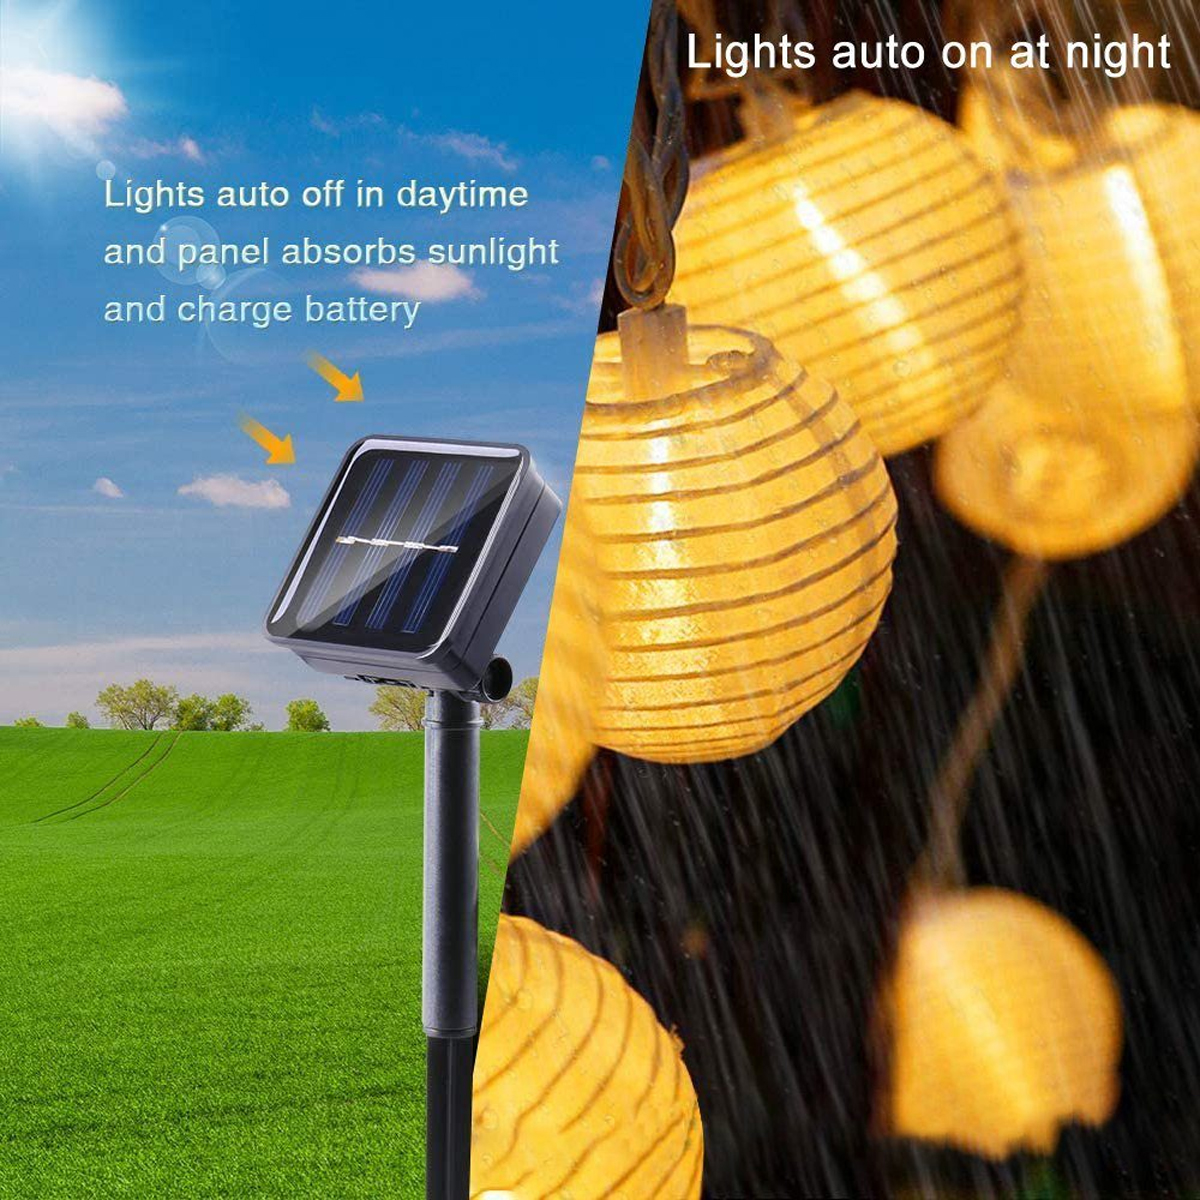 Solar-Lichterketten, 6,5 LAMON 30 Lichter, m, Warmweiß LED Laternen-Lichterkette, Solarleuchte Laternen-Saiten, warmweiß,